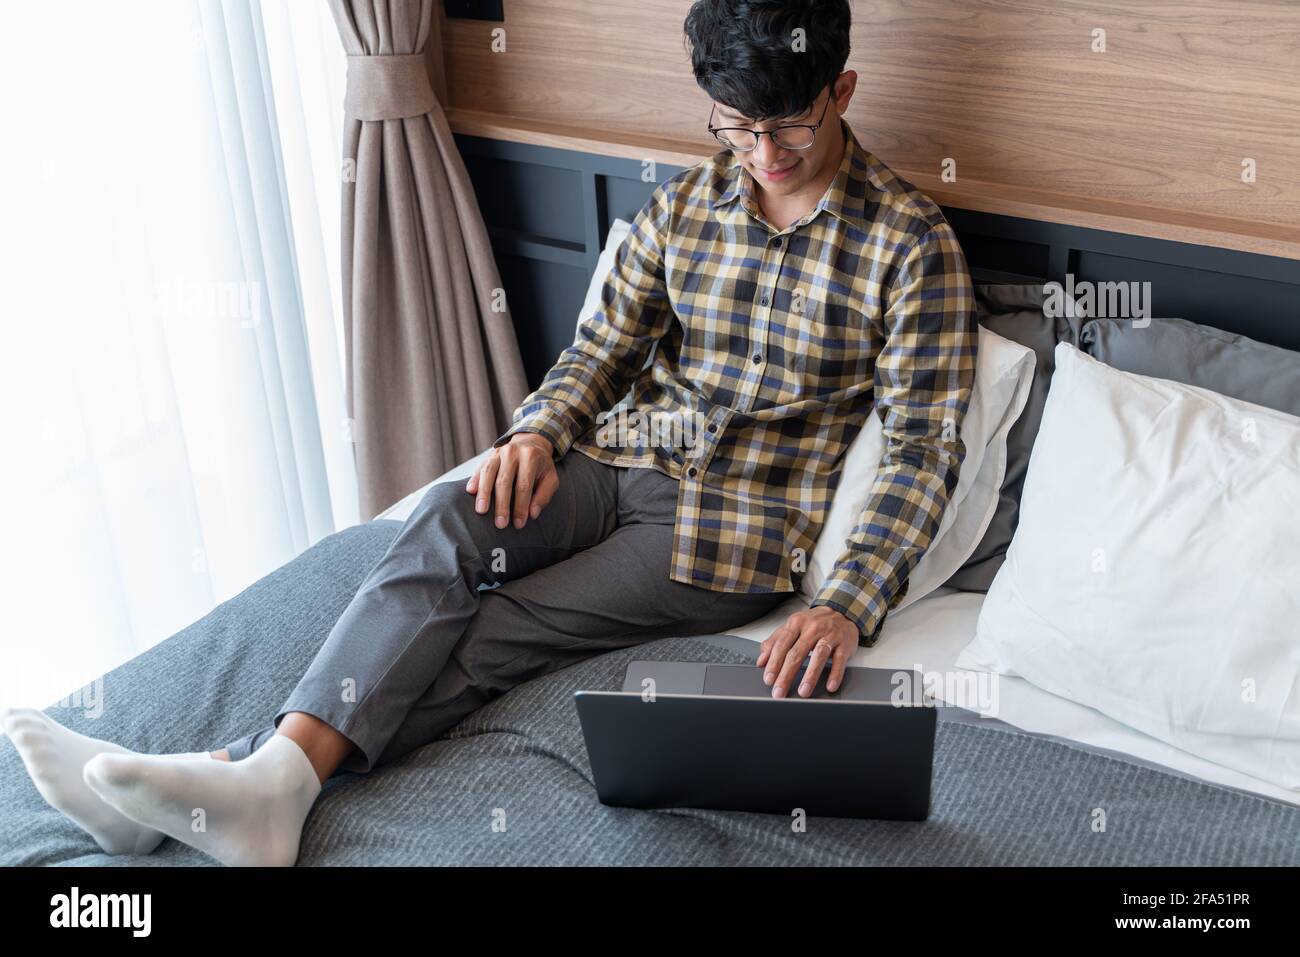 Arbeiten Sie von zu Hause aus, ein Mann mit kariertem Hemd, der eine Augenbrille trägt, liegt auf dem Bett, während er den ganzen Körper am Computer benutzt. Stockfoto